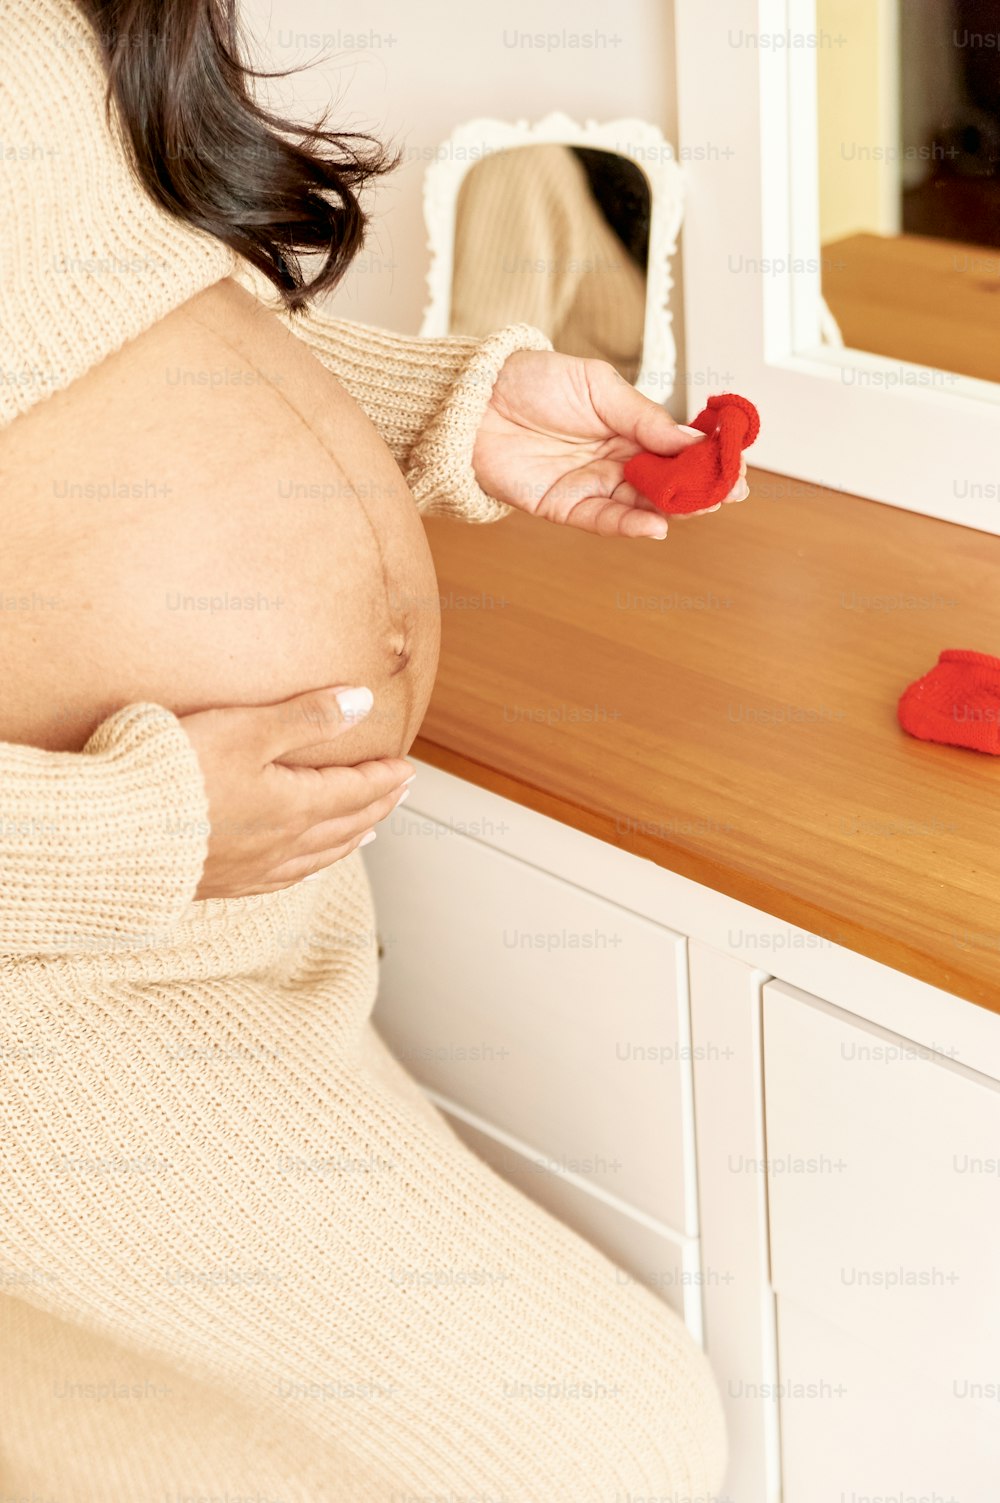 Imágenes de Prenatal Descarga imágenes gratuitas Unsplash